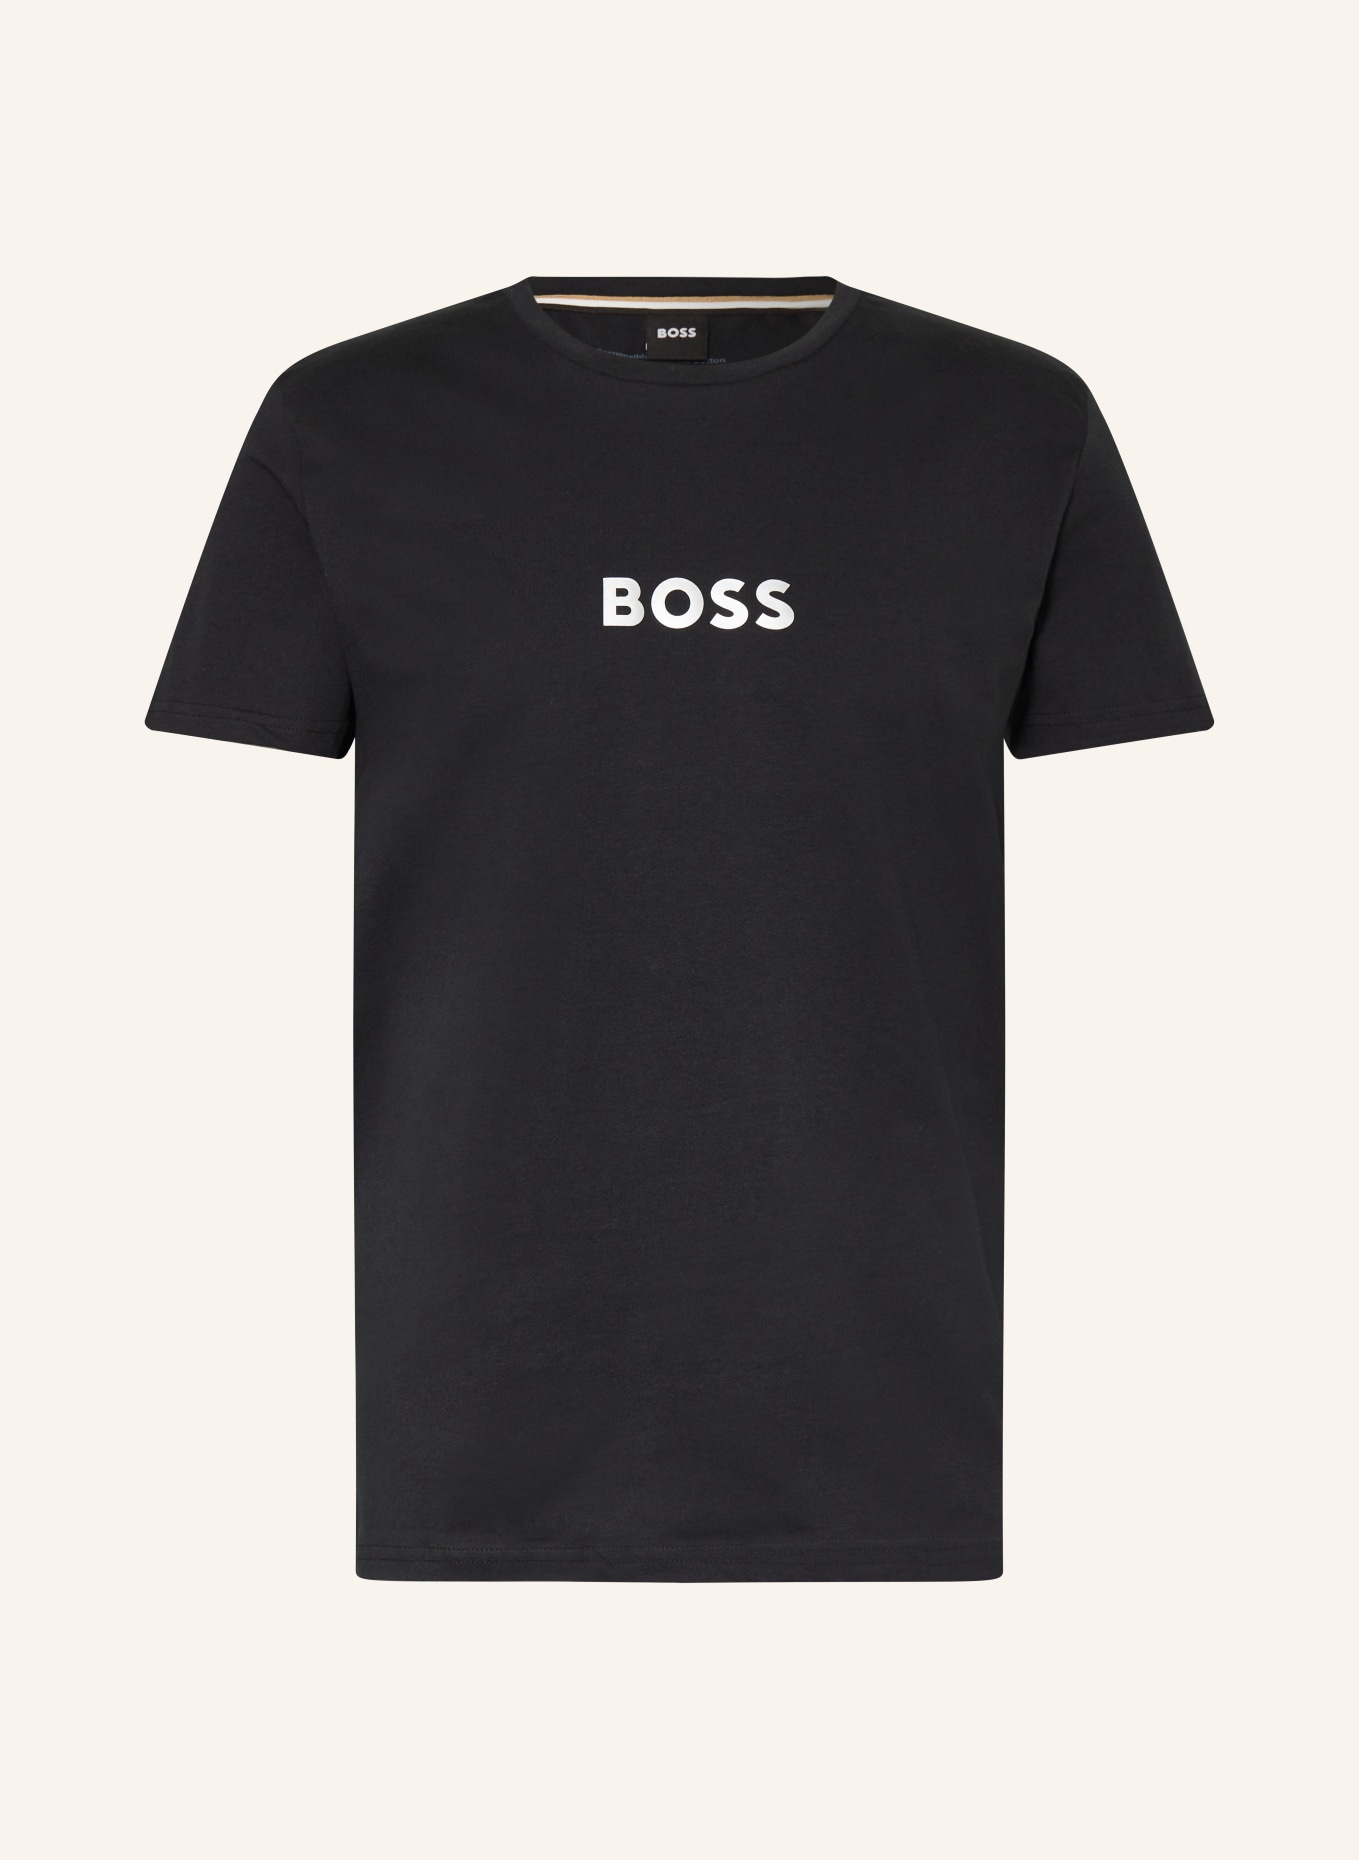 BOSS T-Shirt SPECIAL, Farbe: SCHWARZ/ GOLD (Bild 1)